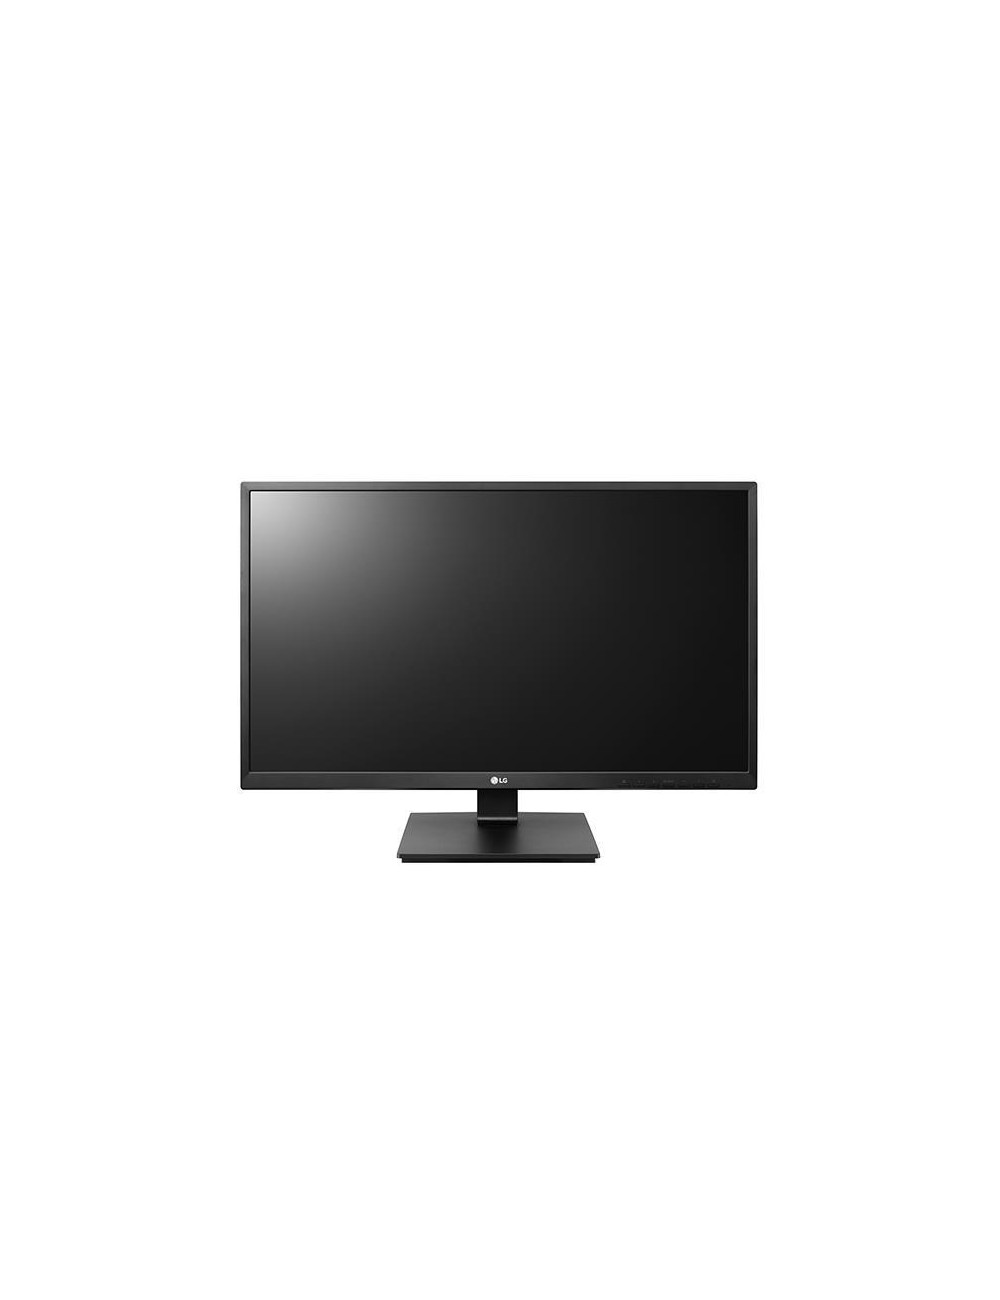 LCD Monitor|LG|27BK55YP-B|27"|Business|Panel IPS|1920x1080|16:9|Matte|5 ms|Speakers|Swivel|Pivot|Height adjustable|Tilt|27BK55YP